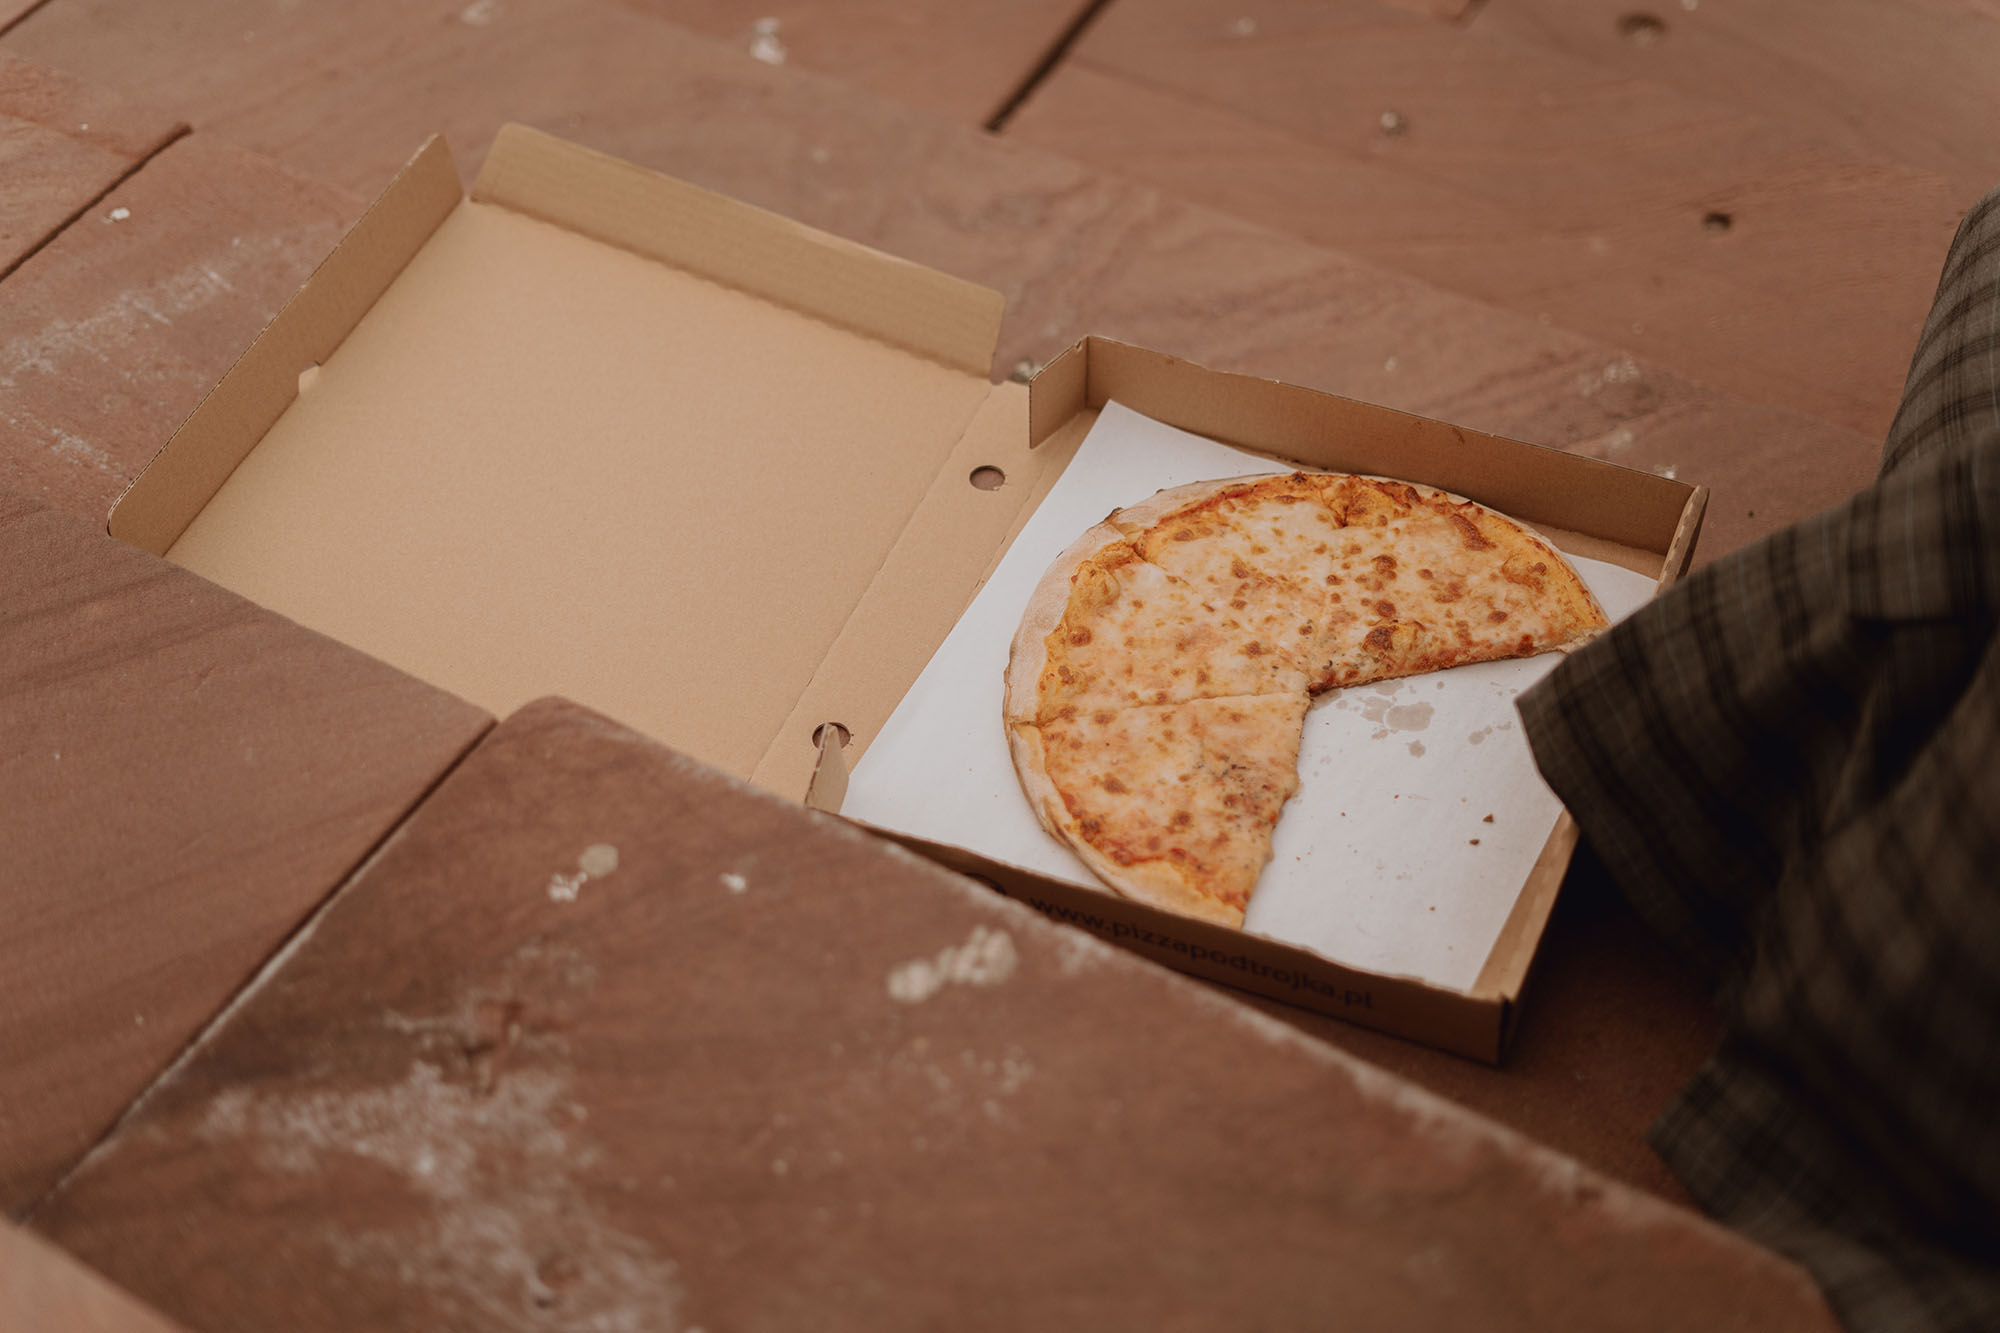 miejska sesja slubna00047 - Włoska pizza i sesja ślubna w miejskim klimacie